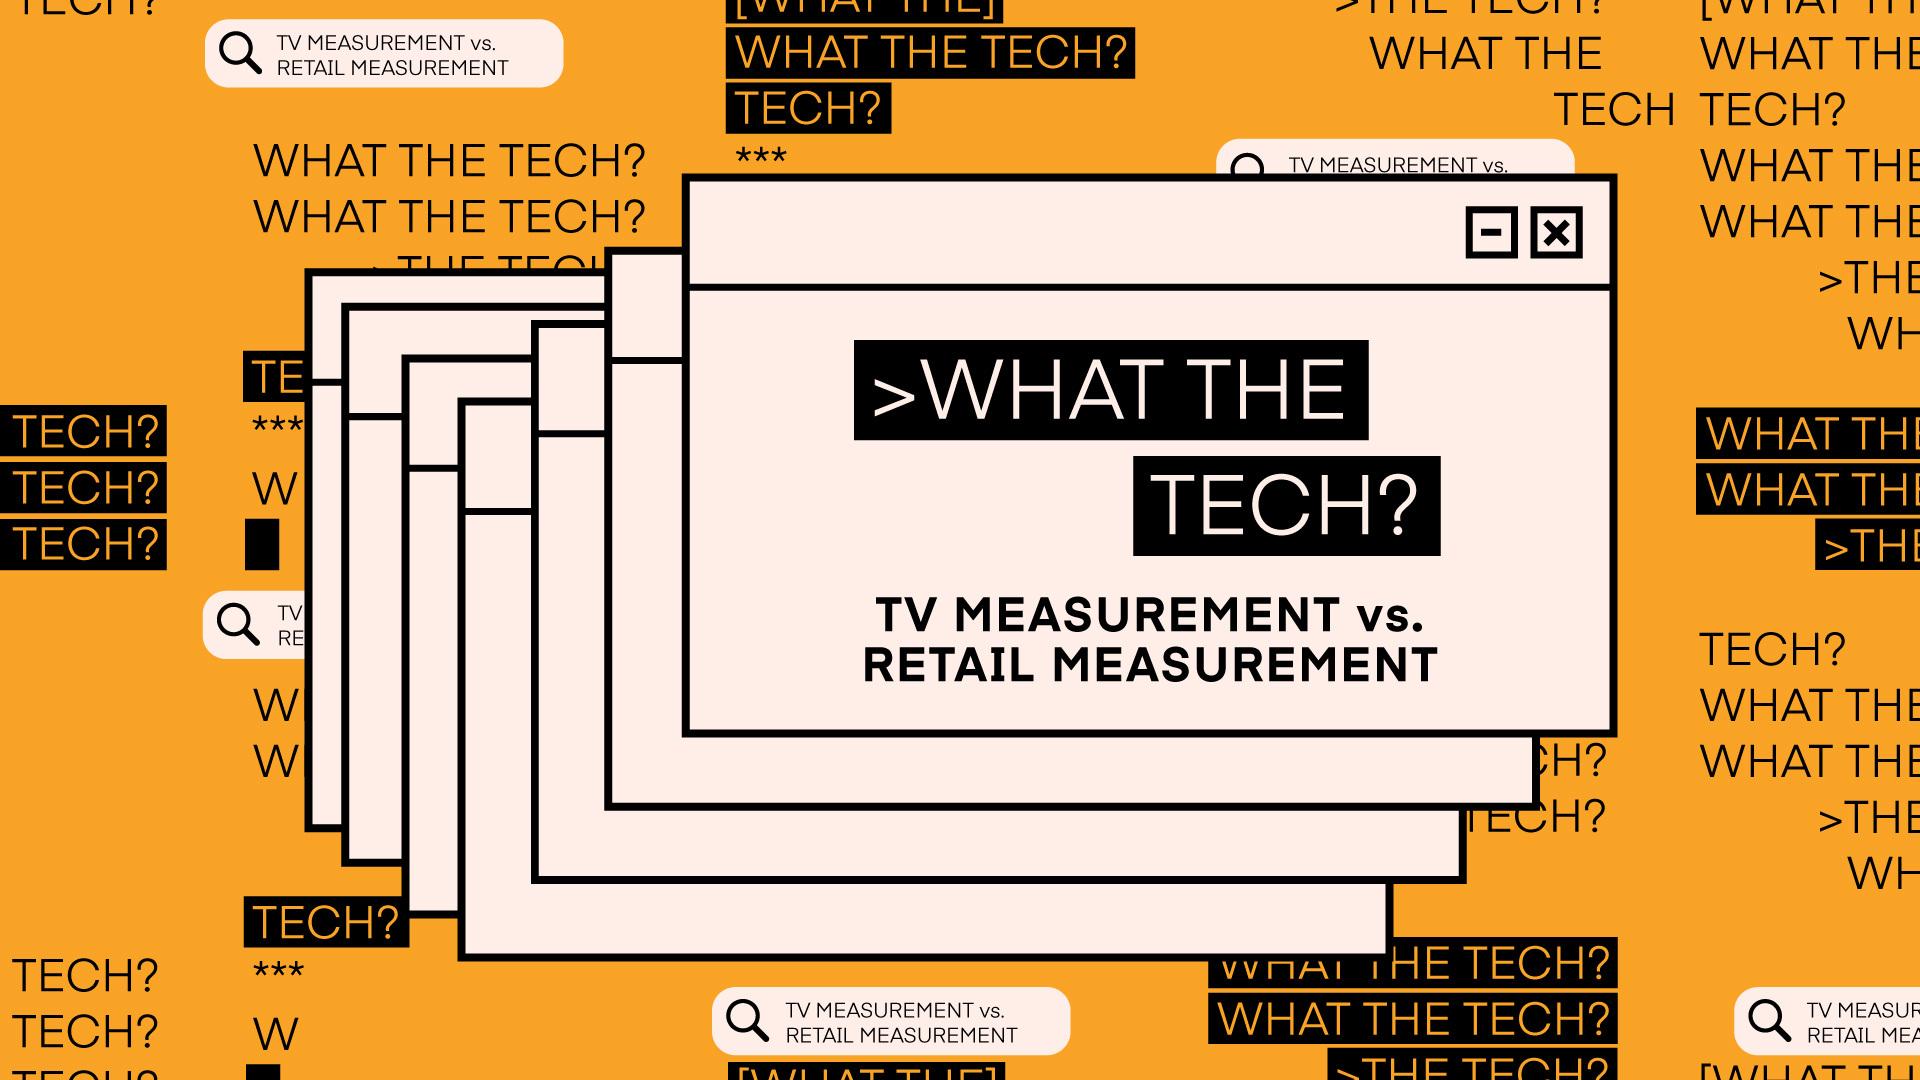 What the Tech is TV Measurement vs. Retail Measurement?